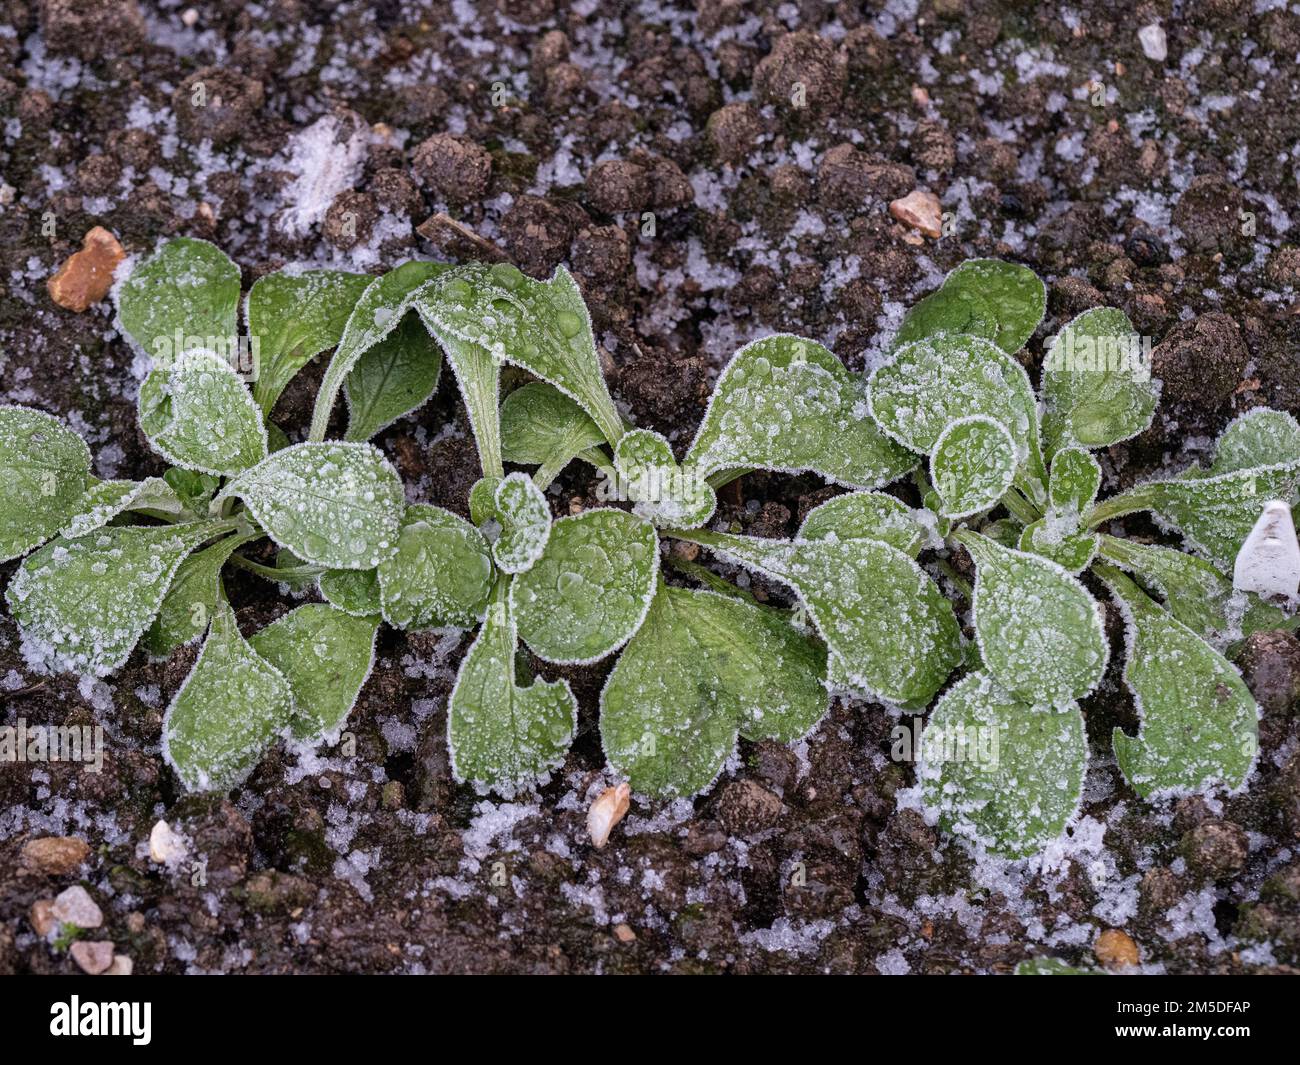 Junge Setzlinge aus Maissalat oder Lammsalat, die nach hartem Frost mit Eiskristallen bedeckt sind. Stockfoto